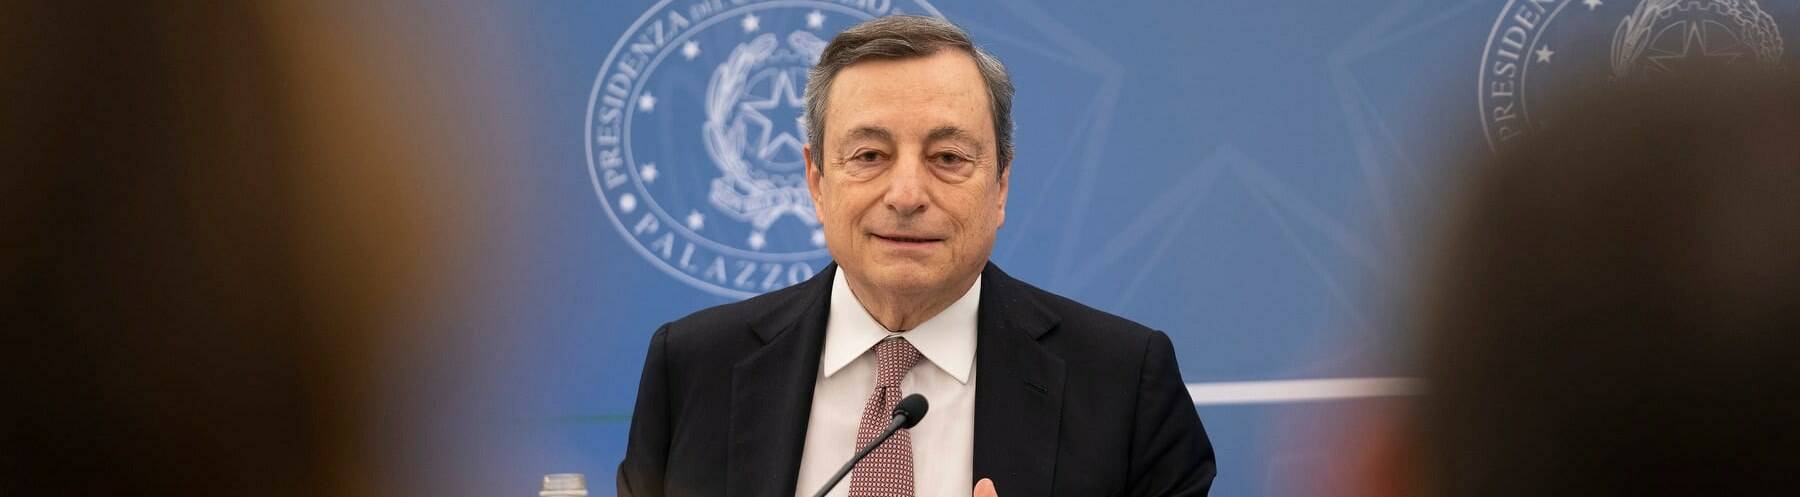 Draghi annuncia le dimissioni: “E’ venuto meno il patto fiducia alla base dell’esecutivo”